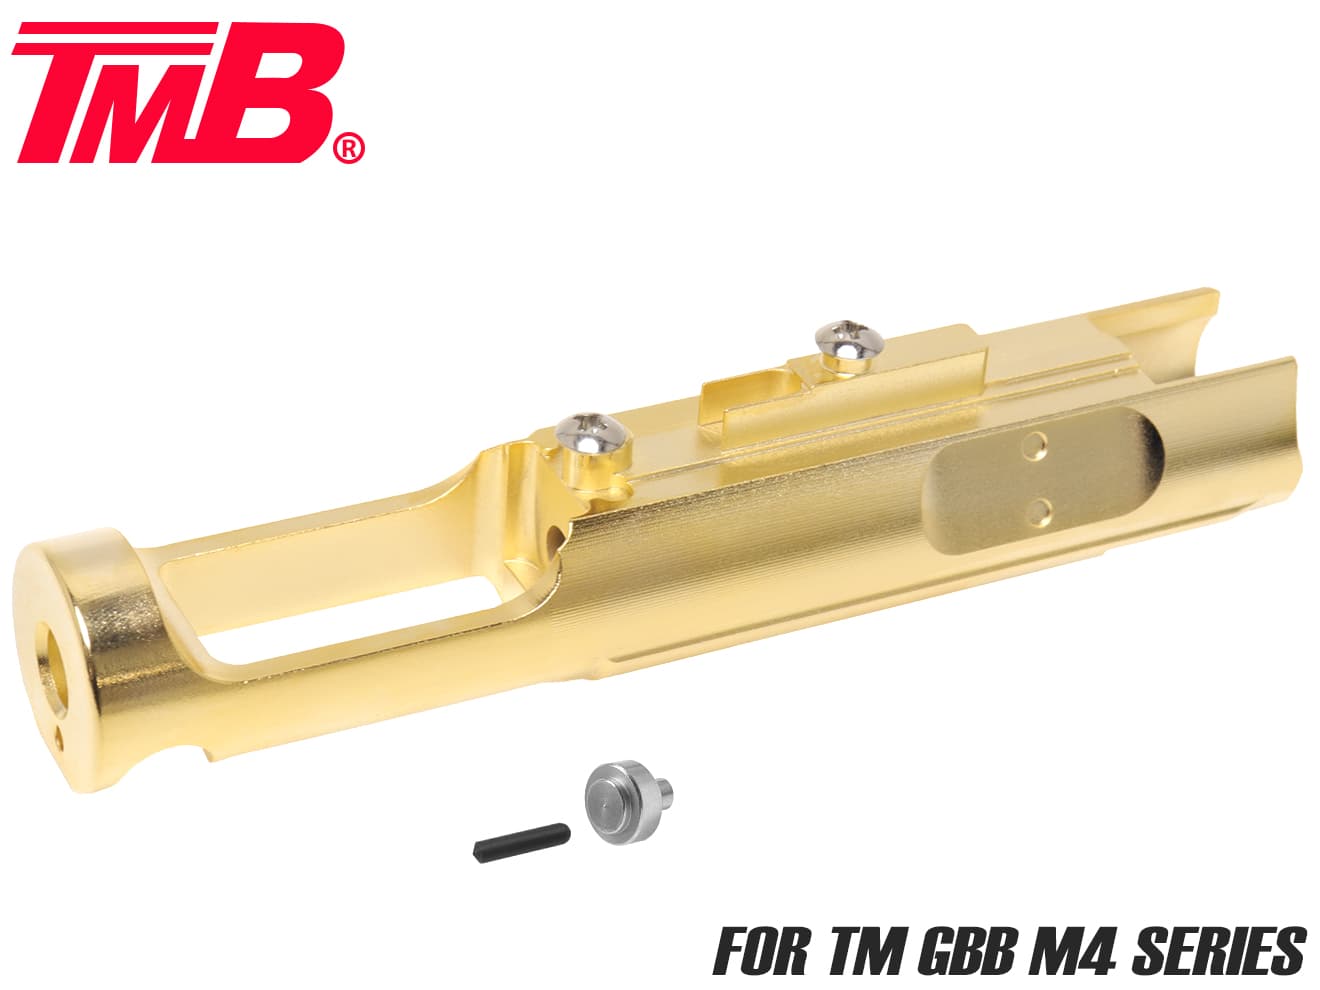 デトネーター DETONATOR 東京マルイ Glock17/18C GBB対応 WARREN Tacticalタイプ フロント&リアサイトセット(ST-TM19)